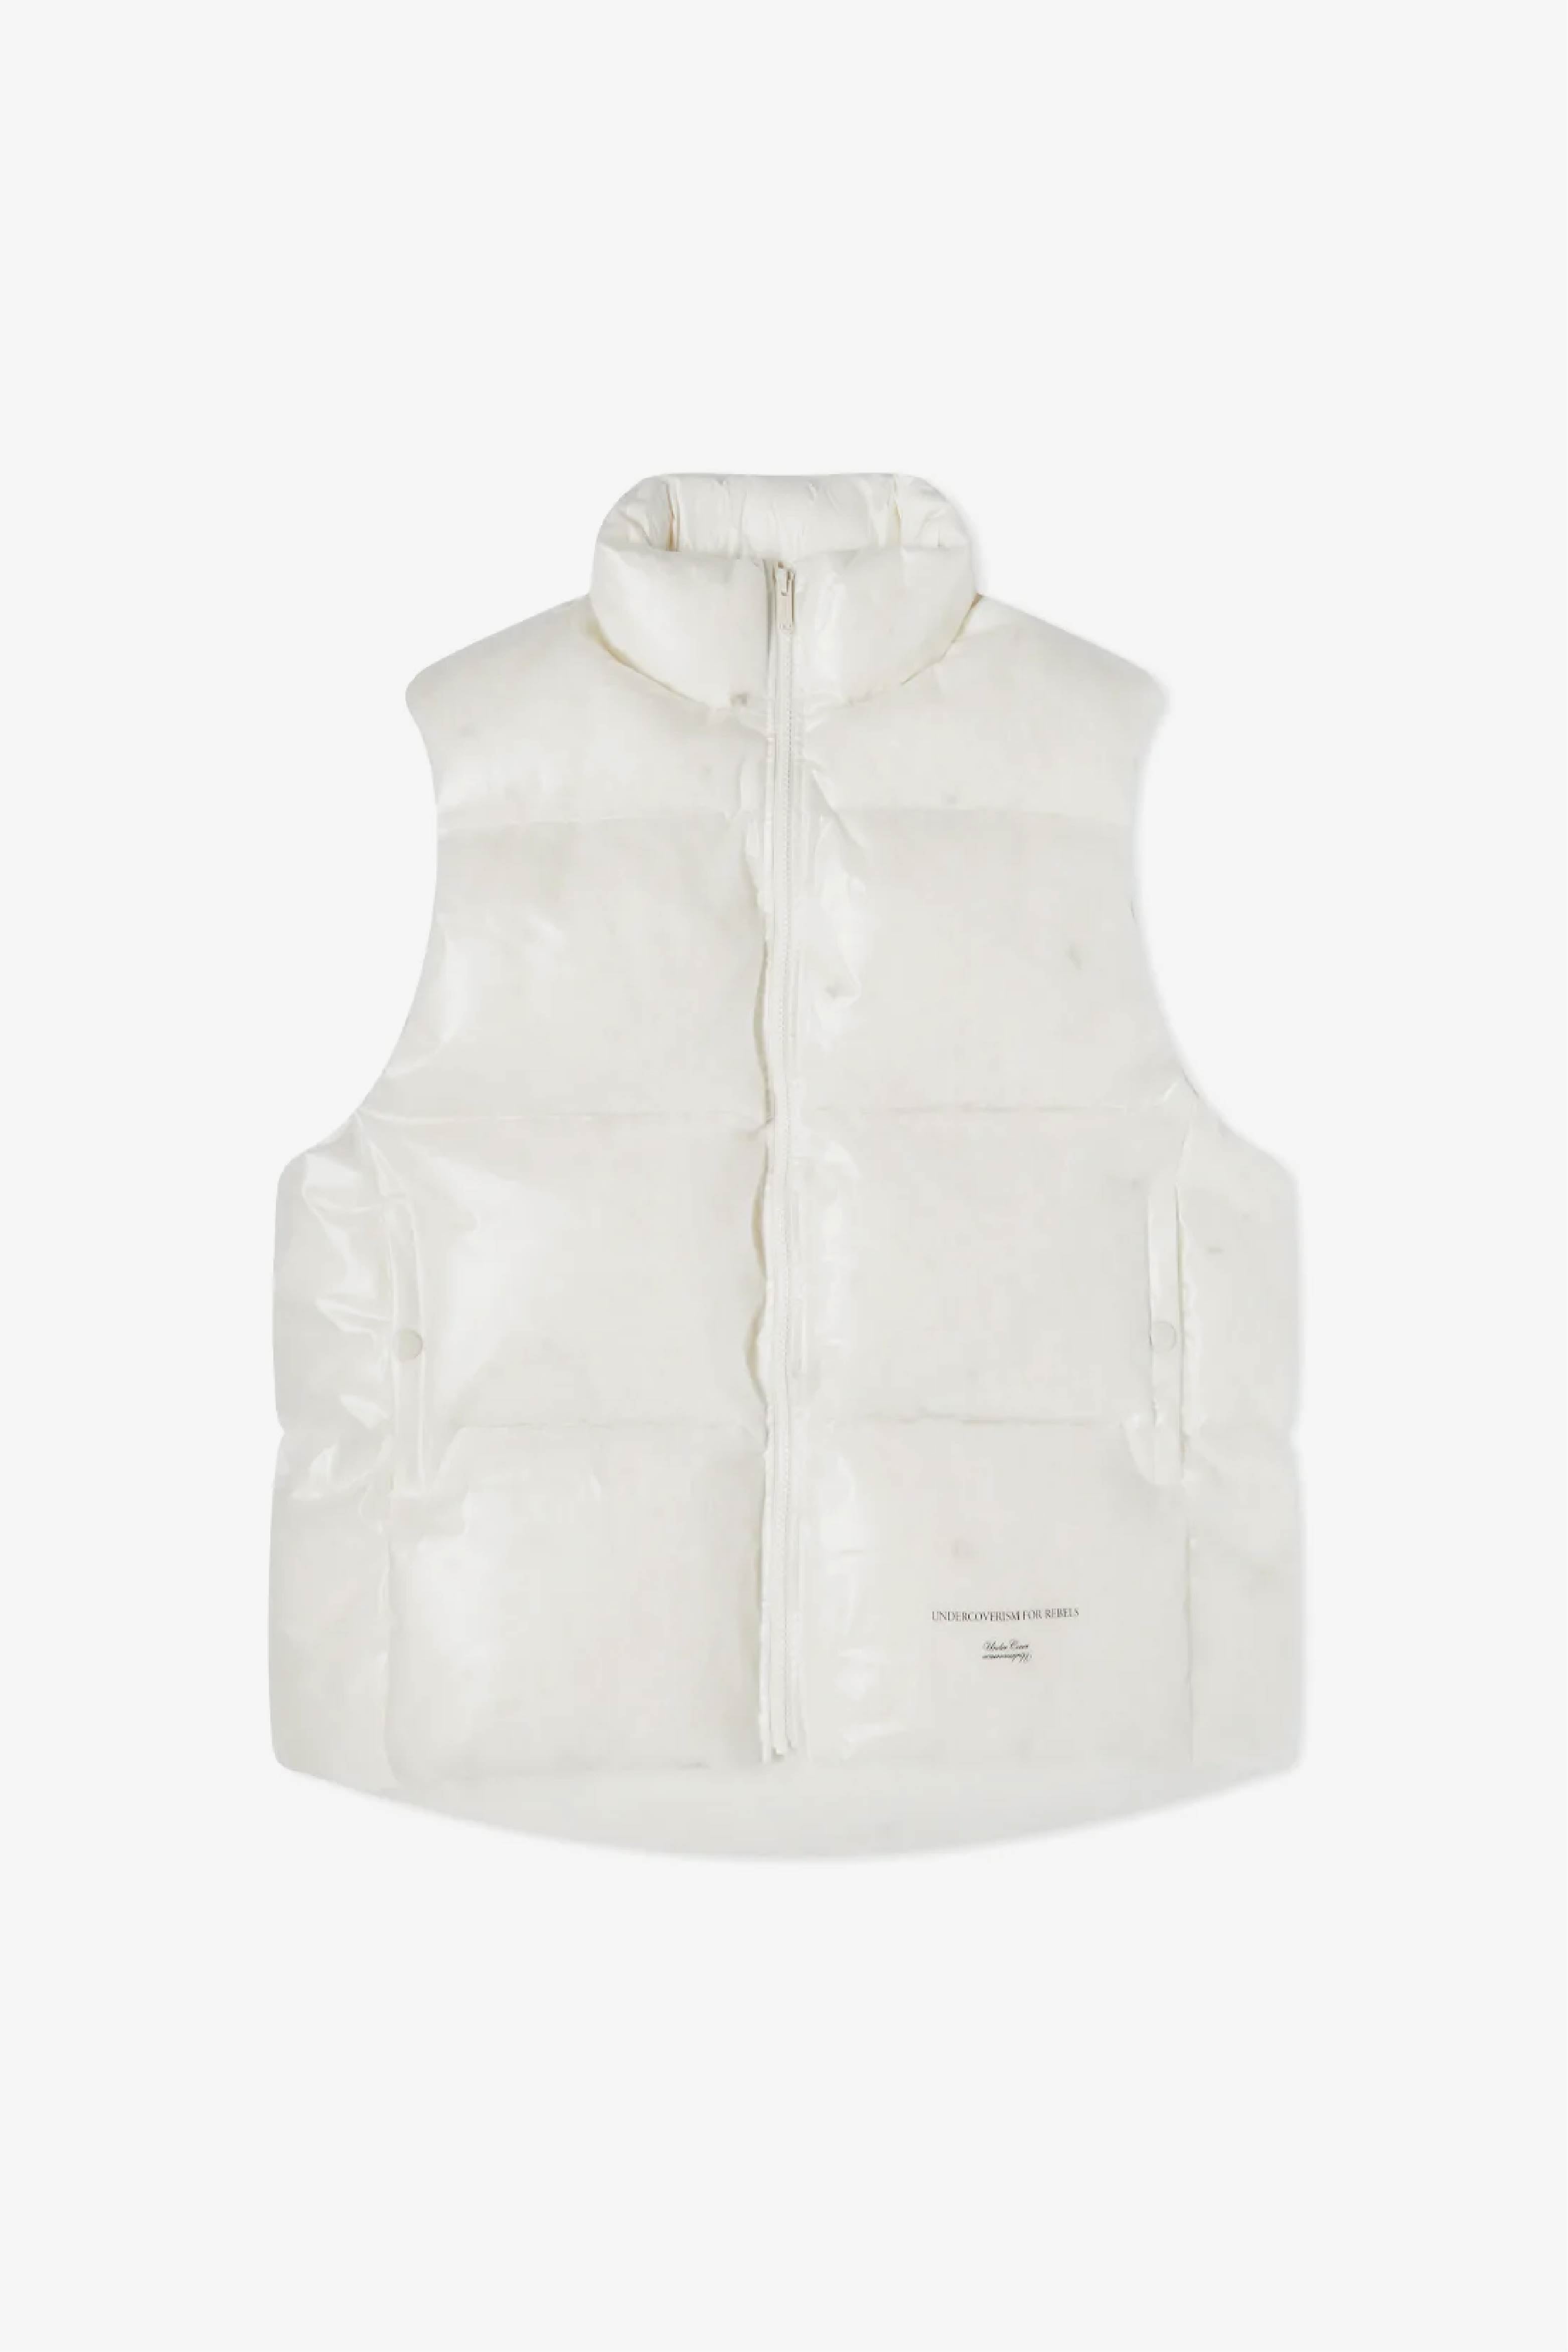 Selectshop FRAME - UNDERCOVER Blouson Vest Outerwear Dubai